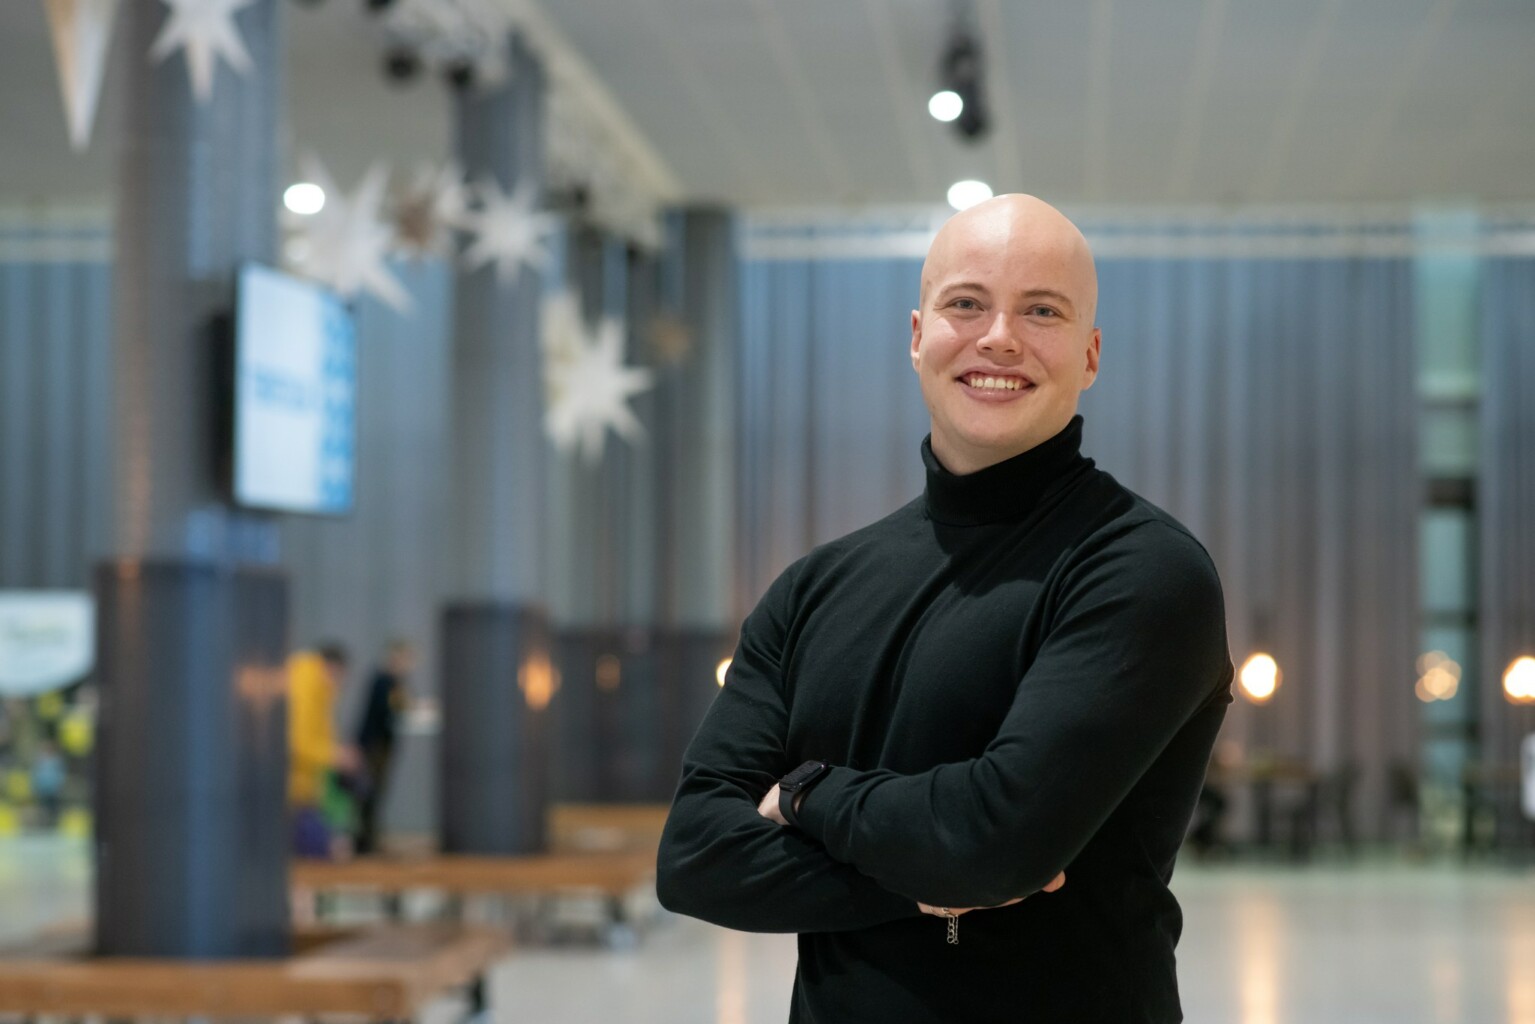 Tämän vuoden Diilissä kilpaileva Elias Mäkinen esitelmöi sosiaalisen median ja erityisesti TikTokin käytöstä työvälineenä ja kohtaamisväylänä. Elias kädet puuskassa hymyilee kameralle.